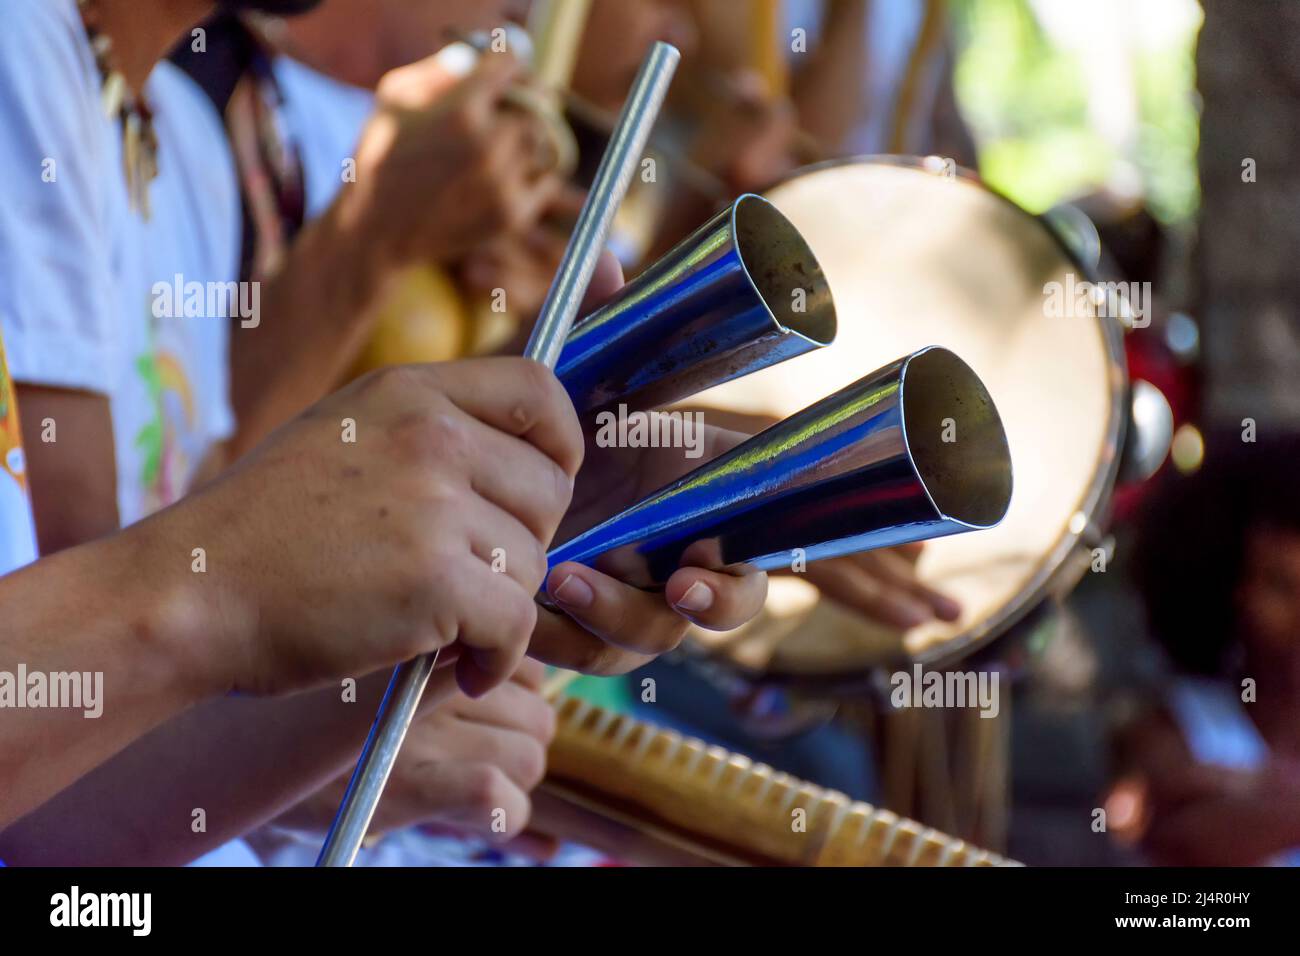 Schlagzeuginstrument aus Metall, das in brasilianischer Samba-Musik verwendet wird Stockfoto